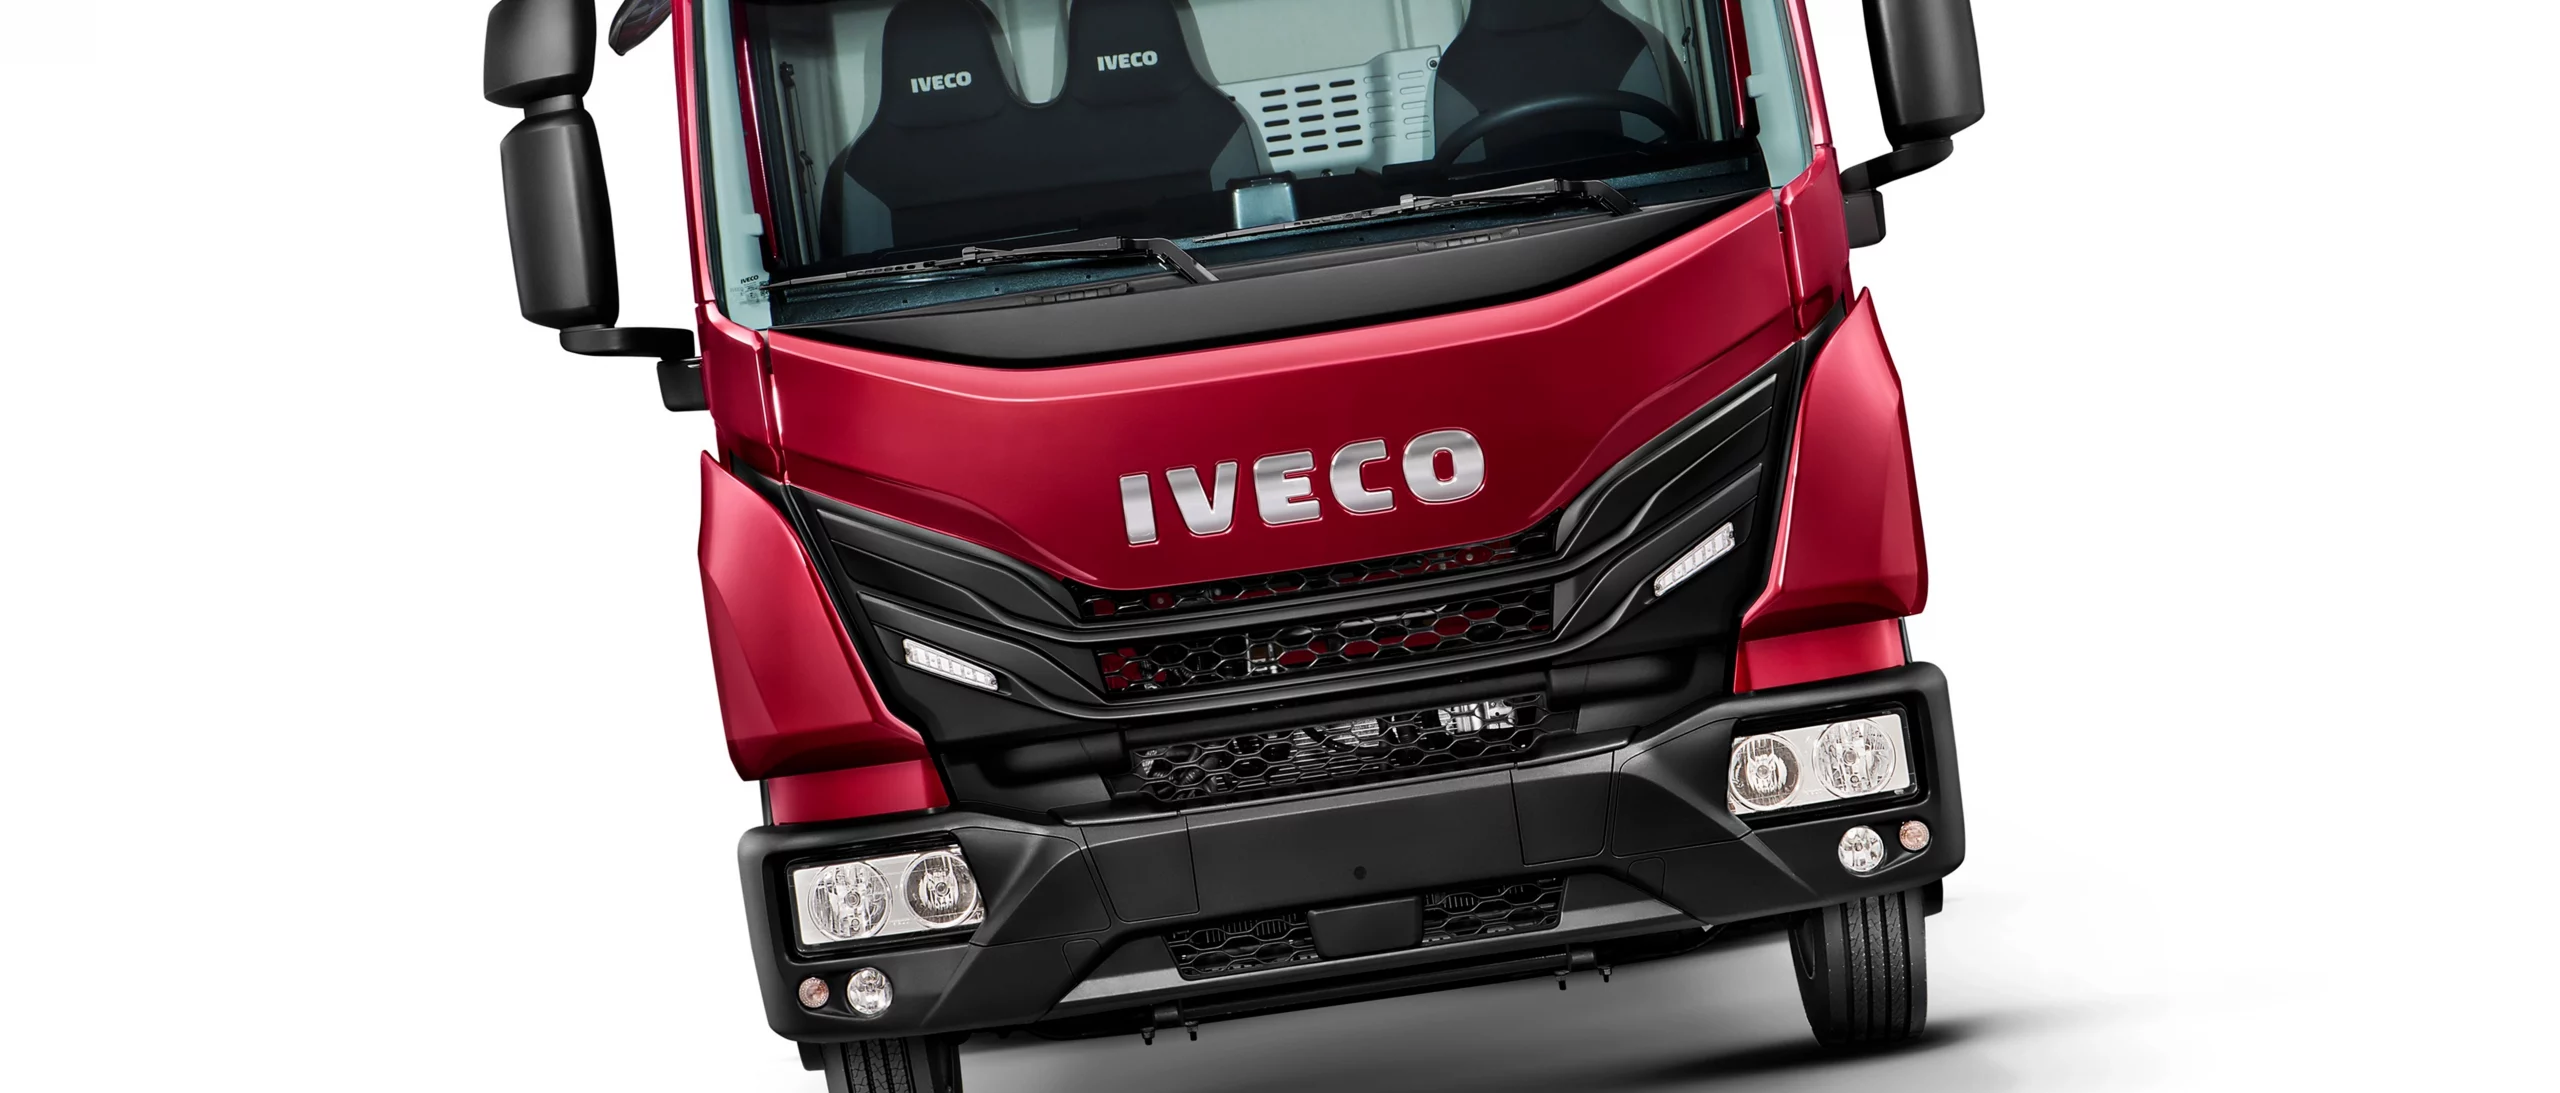 IVECO Tector recebe atualizações com foco no design e no conforto, mantendo sua consagrada versatilidade